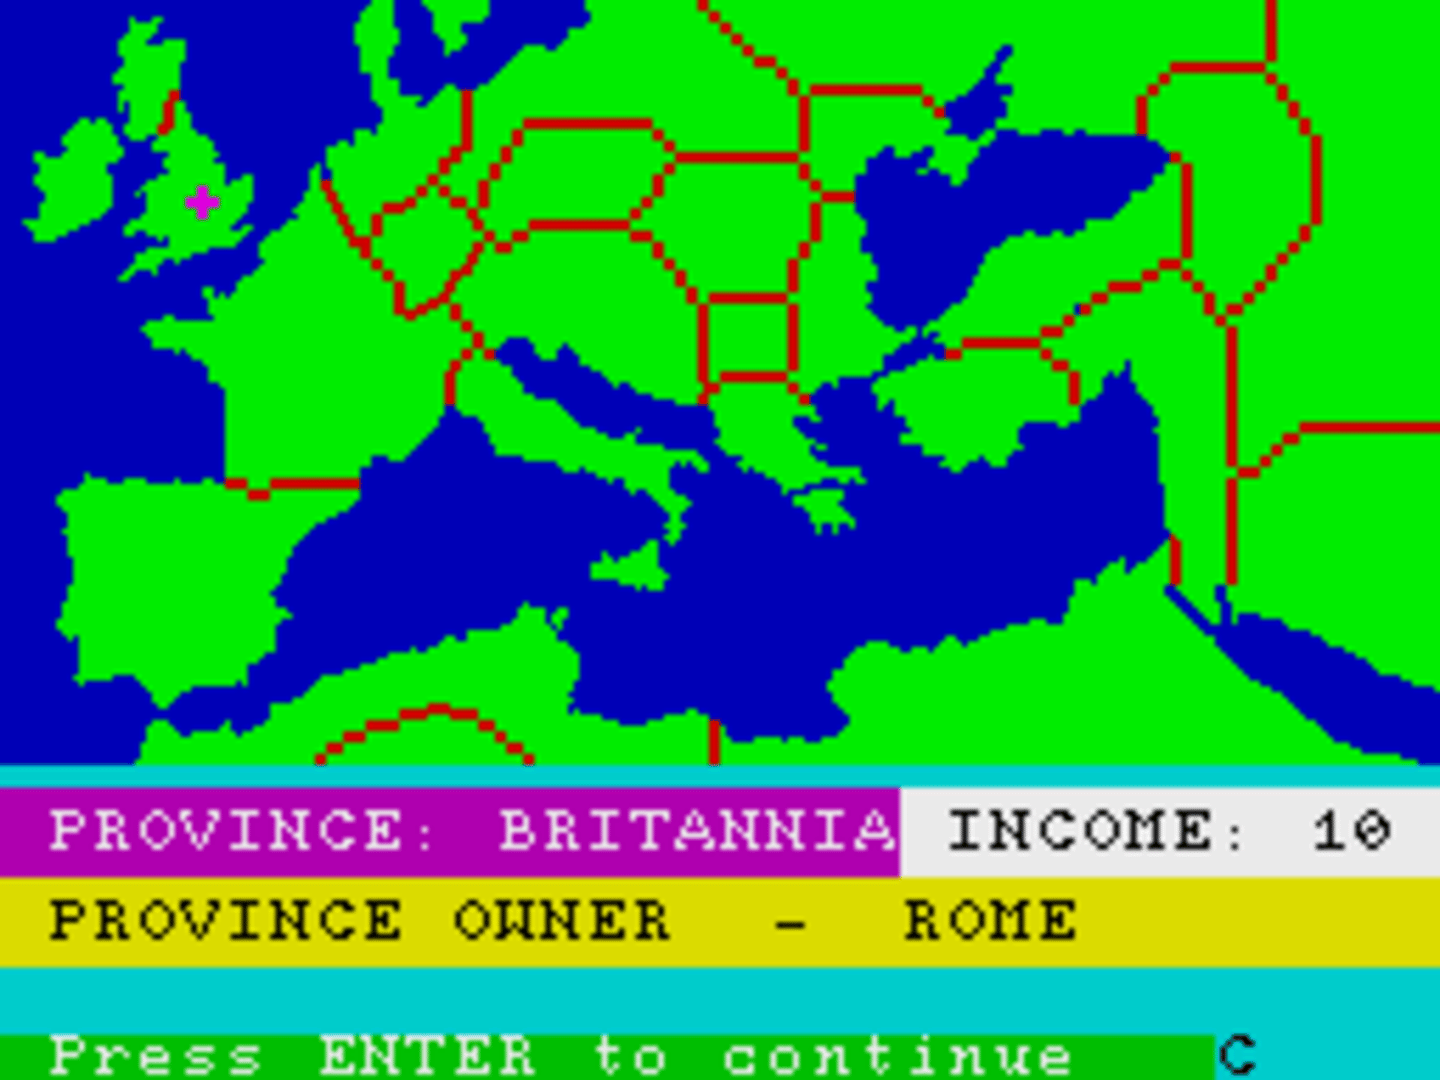 The Fall of Rome screenshot